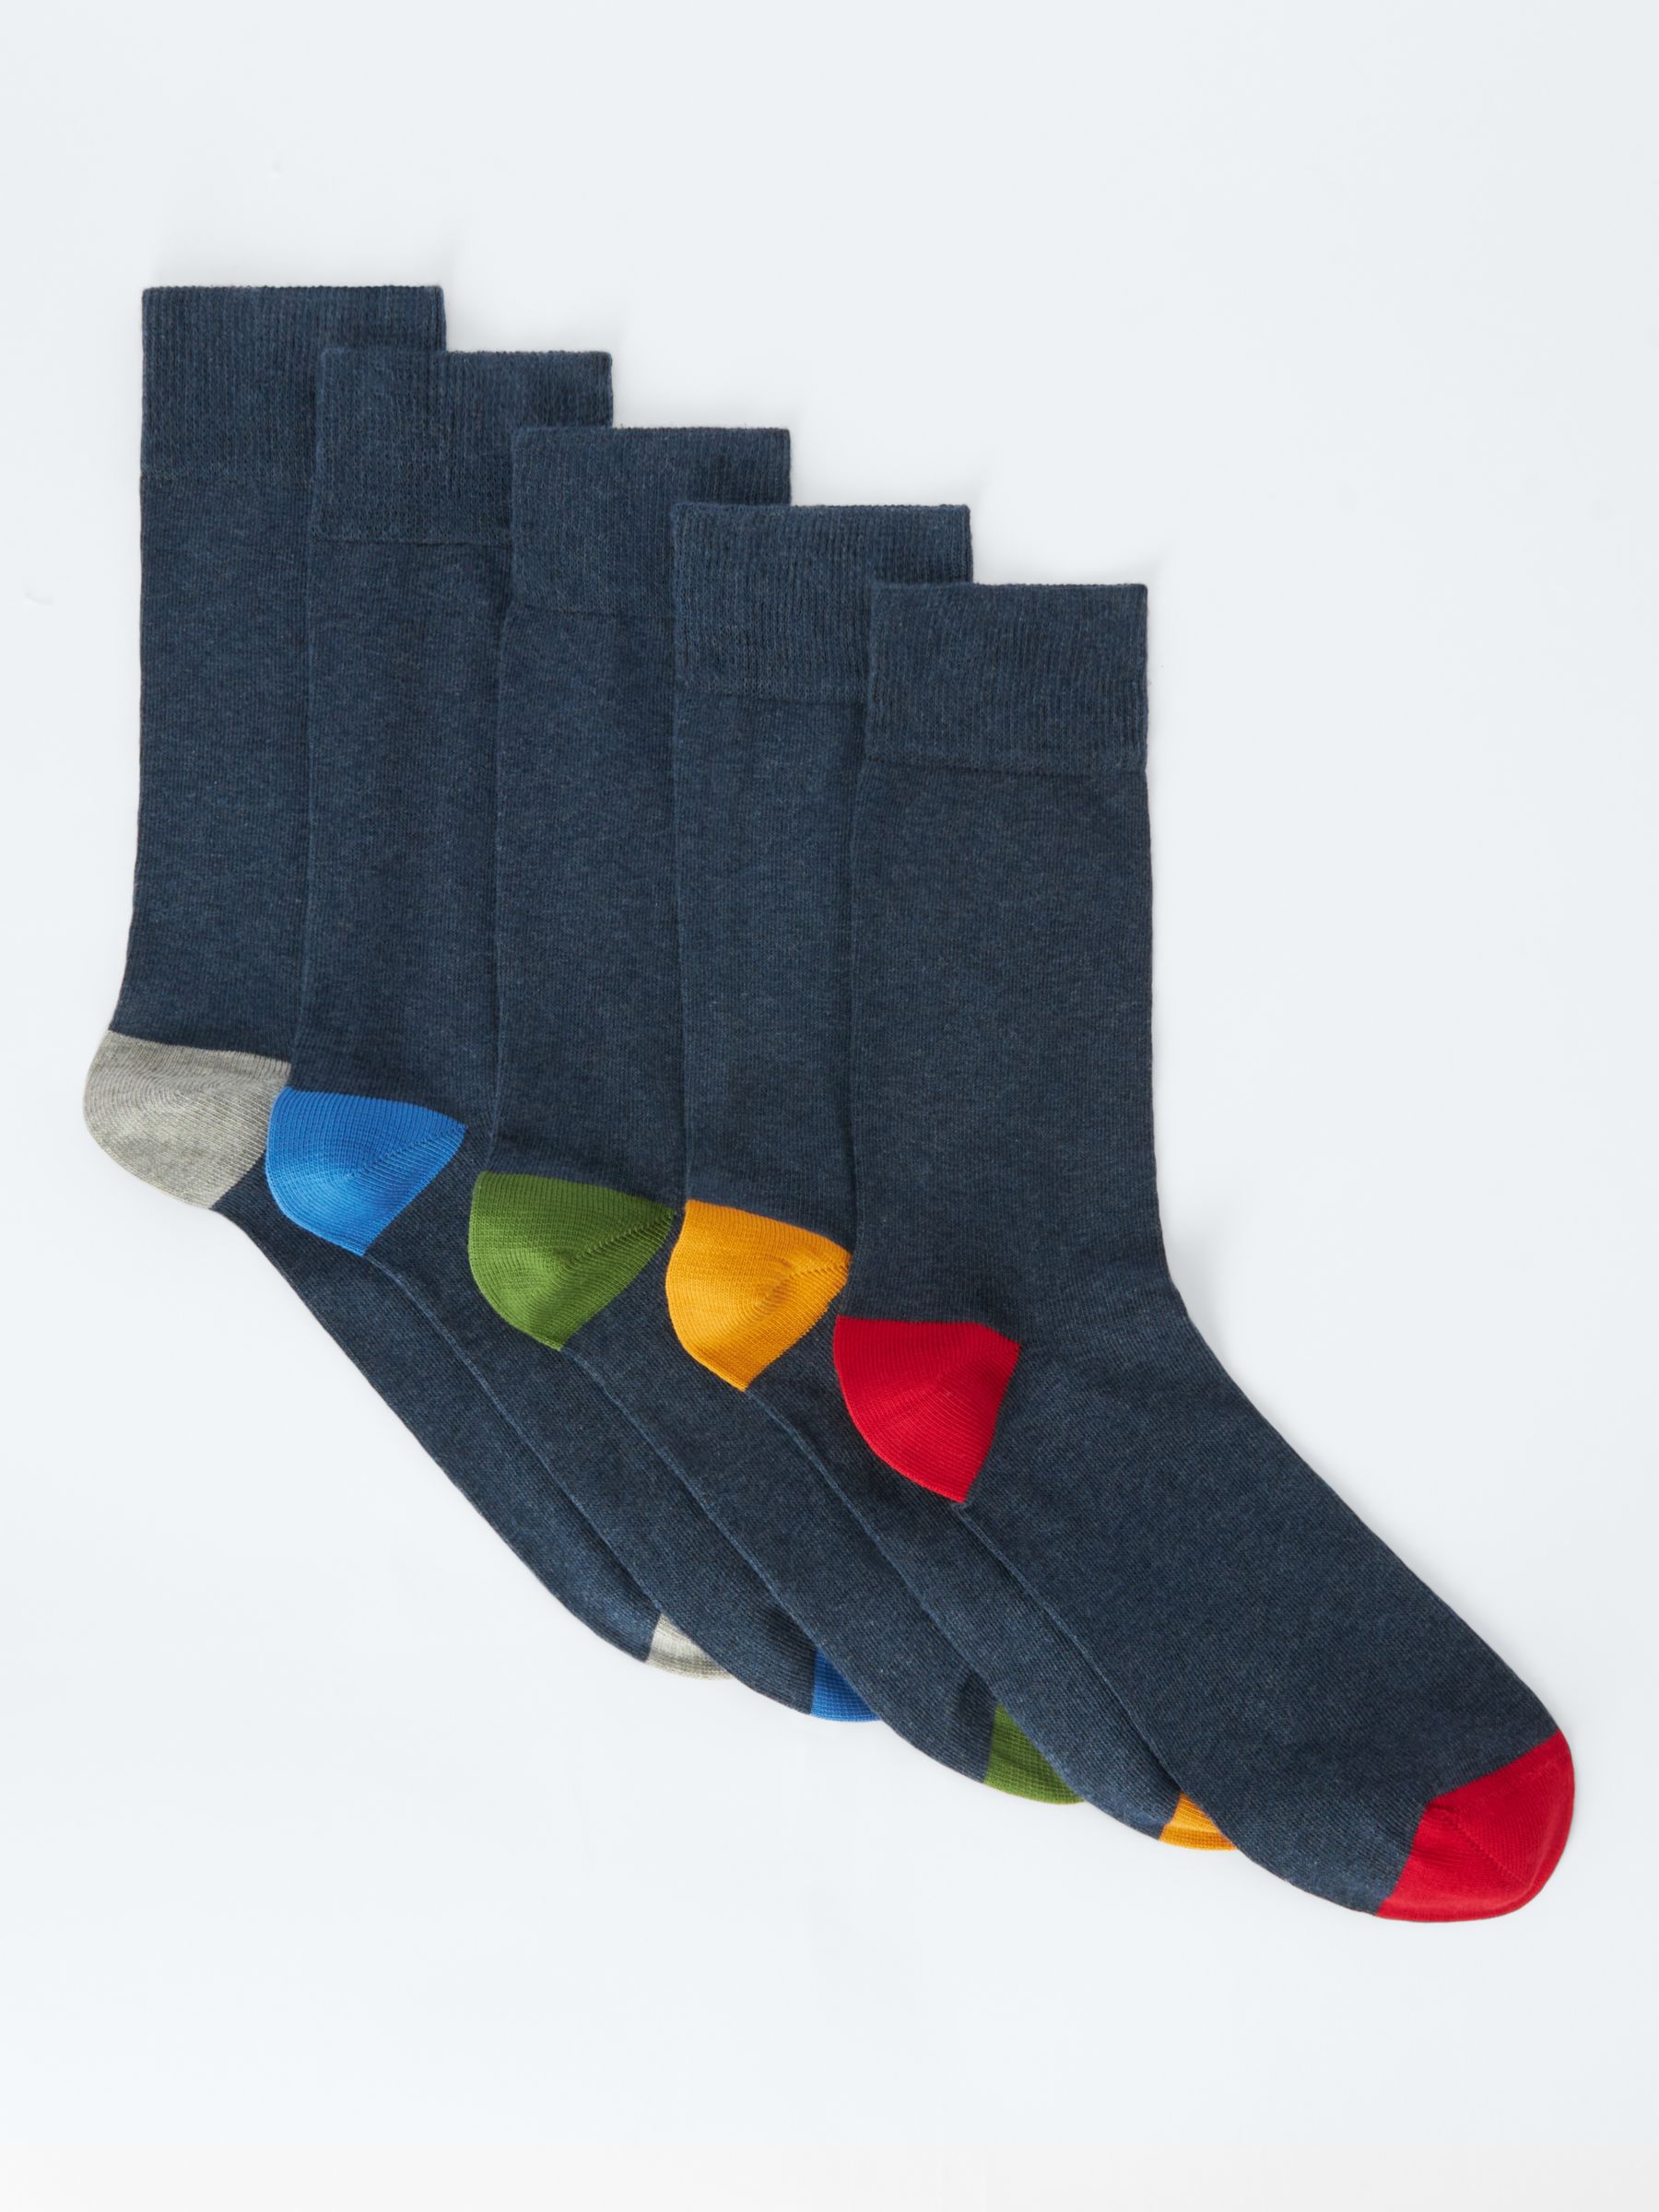 John Lewis Heel/Toe Socks, Pack of 5, Navy/Multi, M